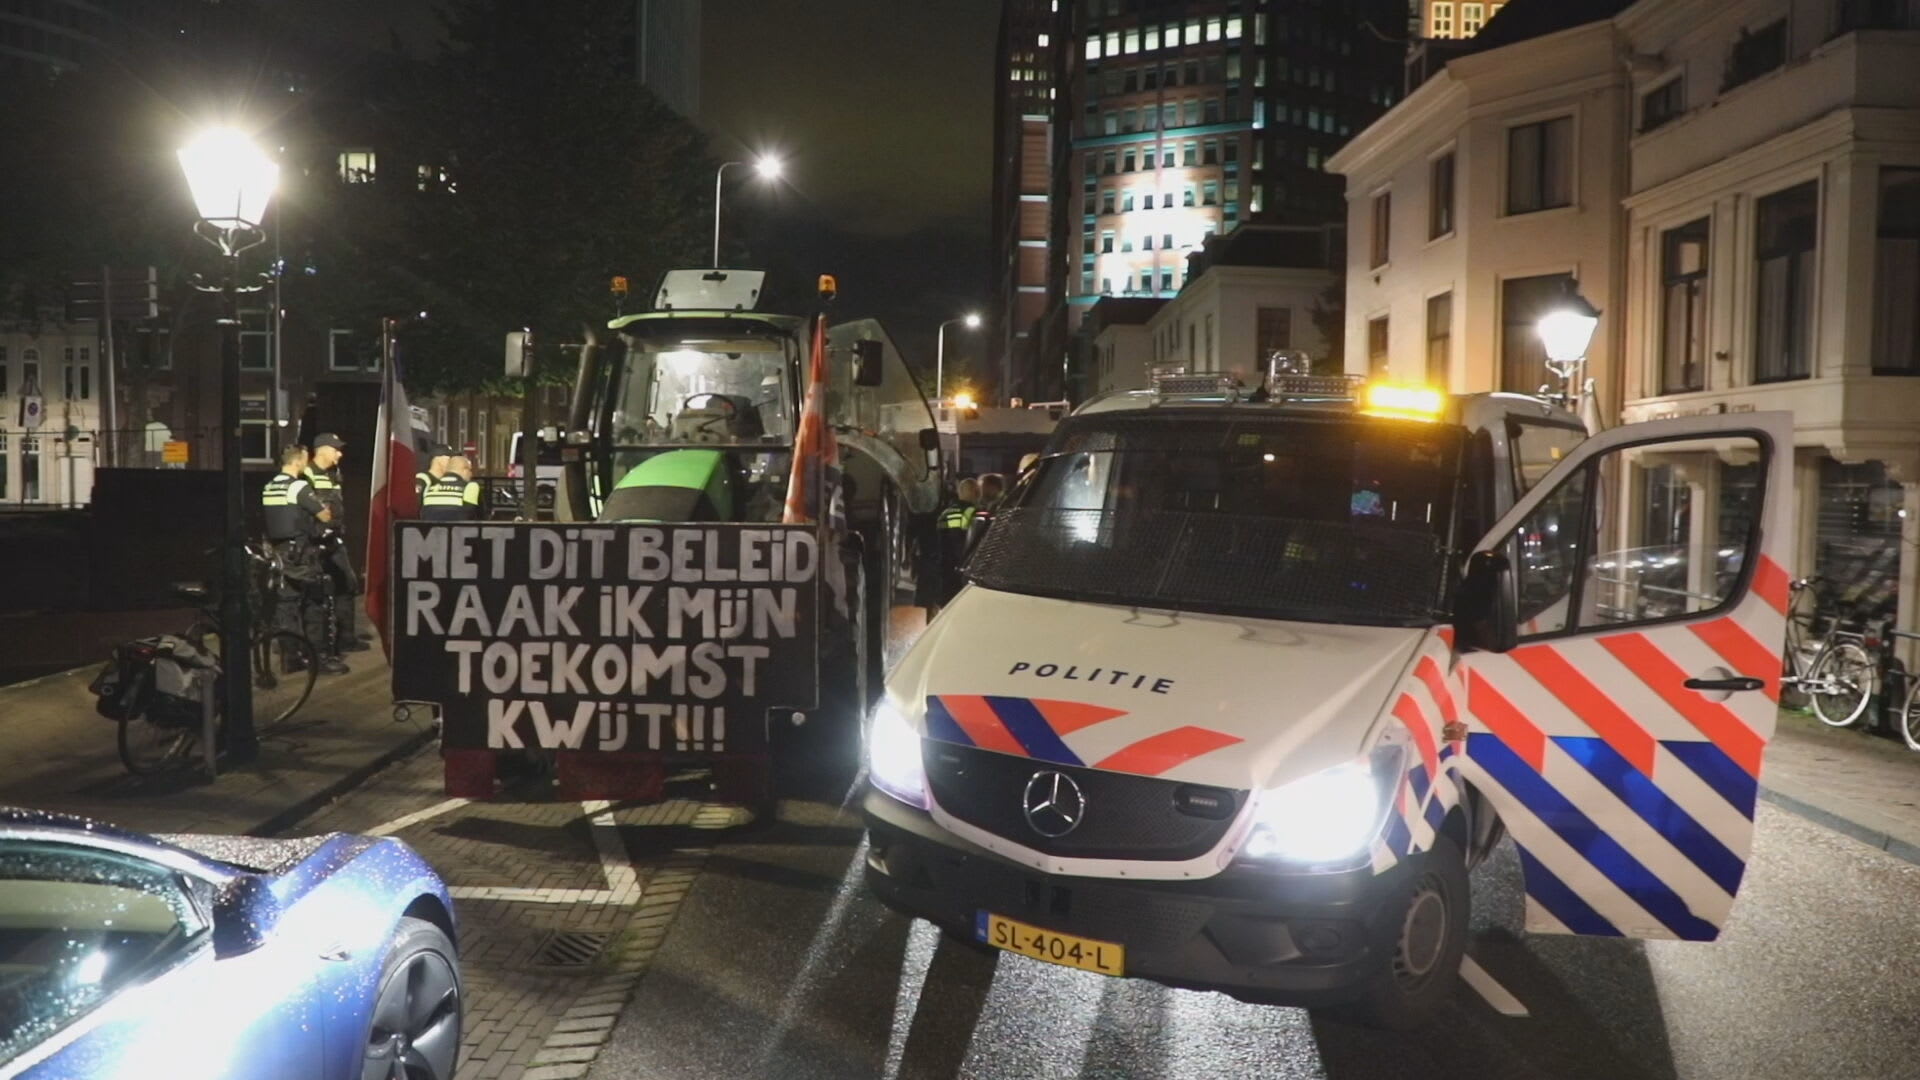 Tientallen boeren onderweg naar Den Haag, politie neemt trekkers in beslag